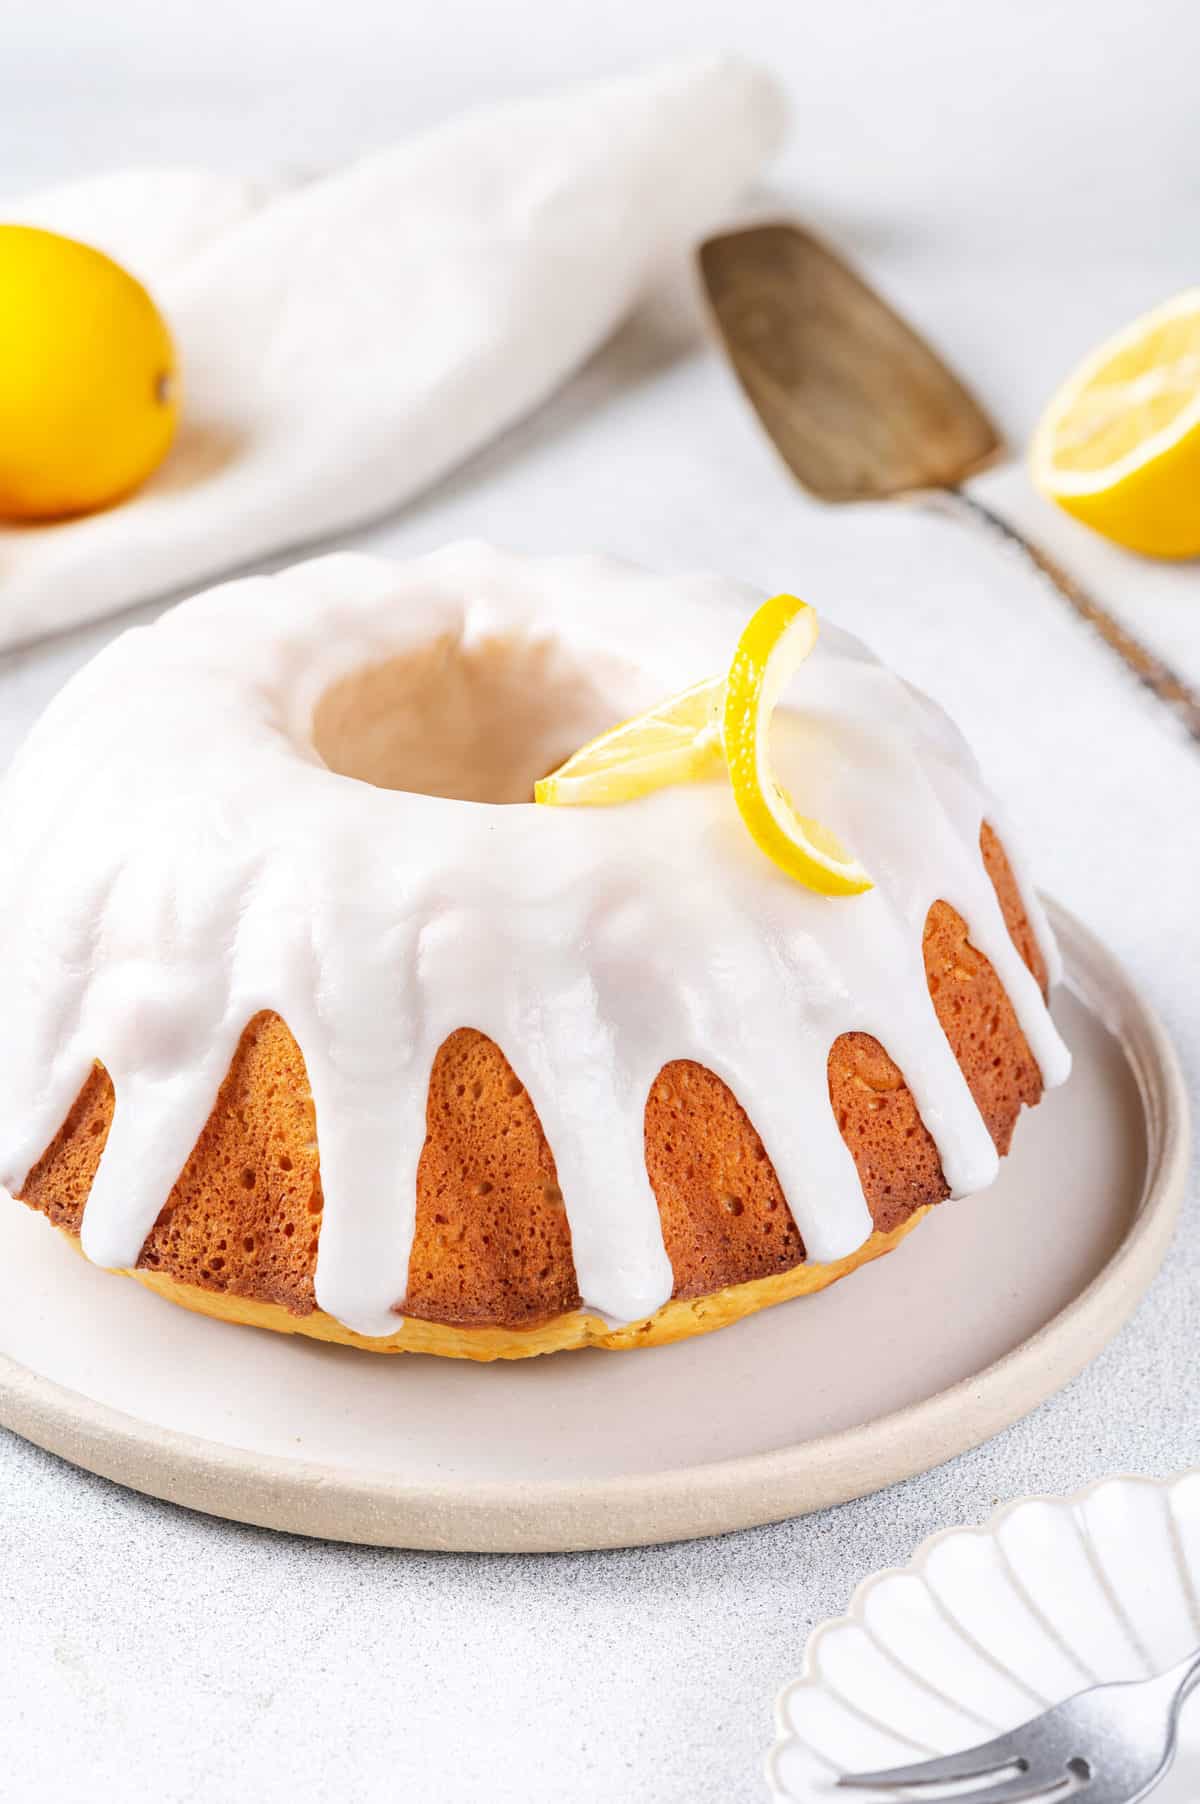 lemon bundt pound cake with lemon glaze topped with sliced lemon served on a plate